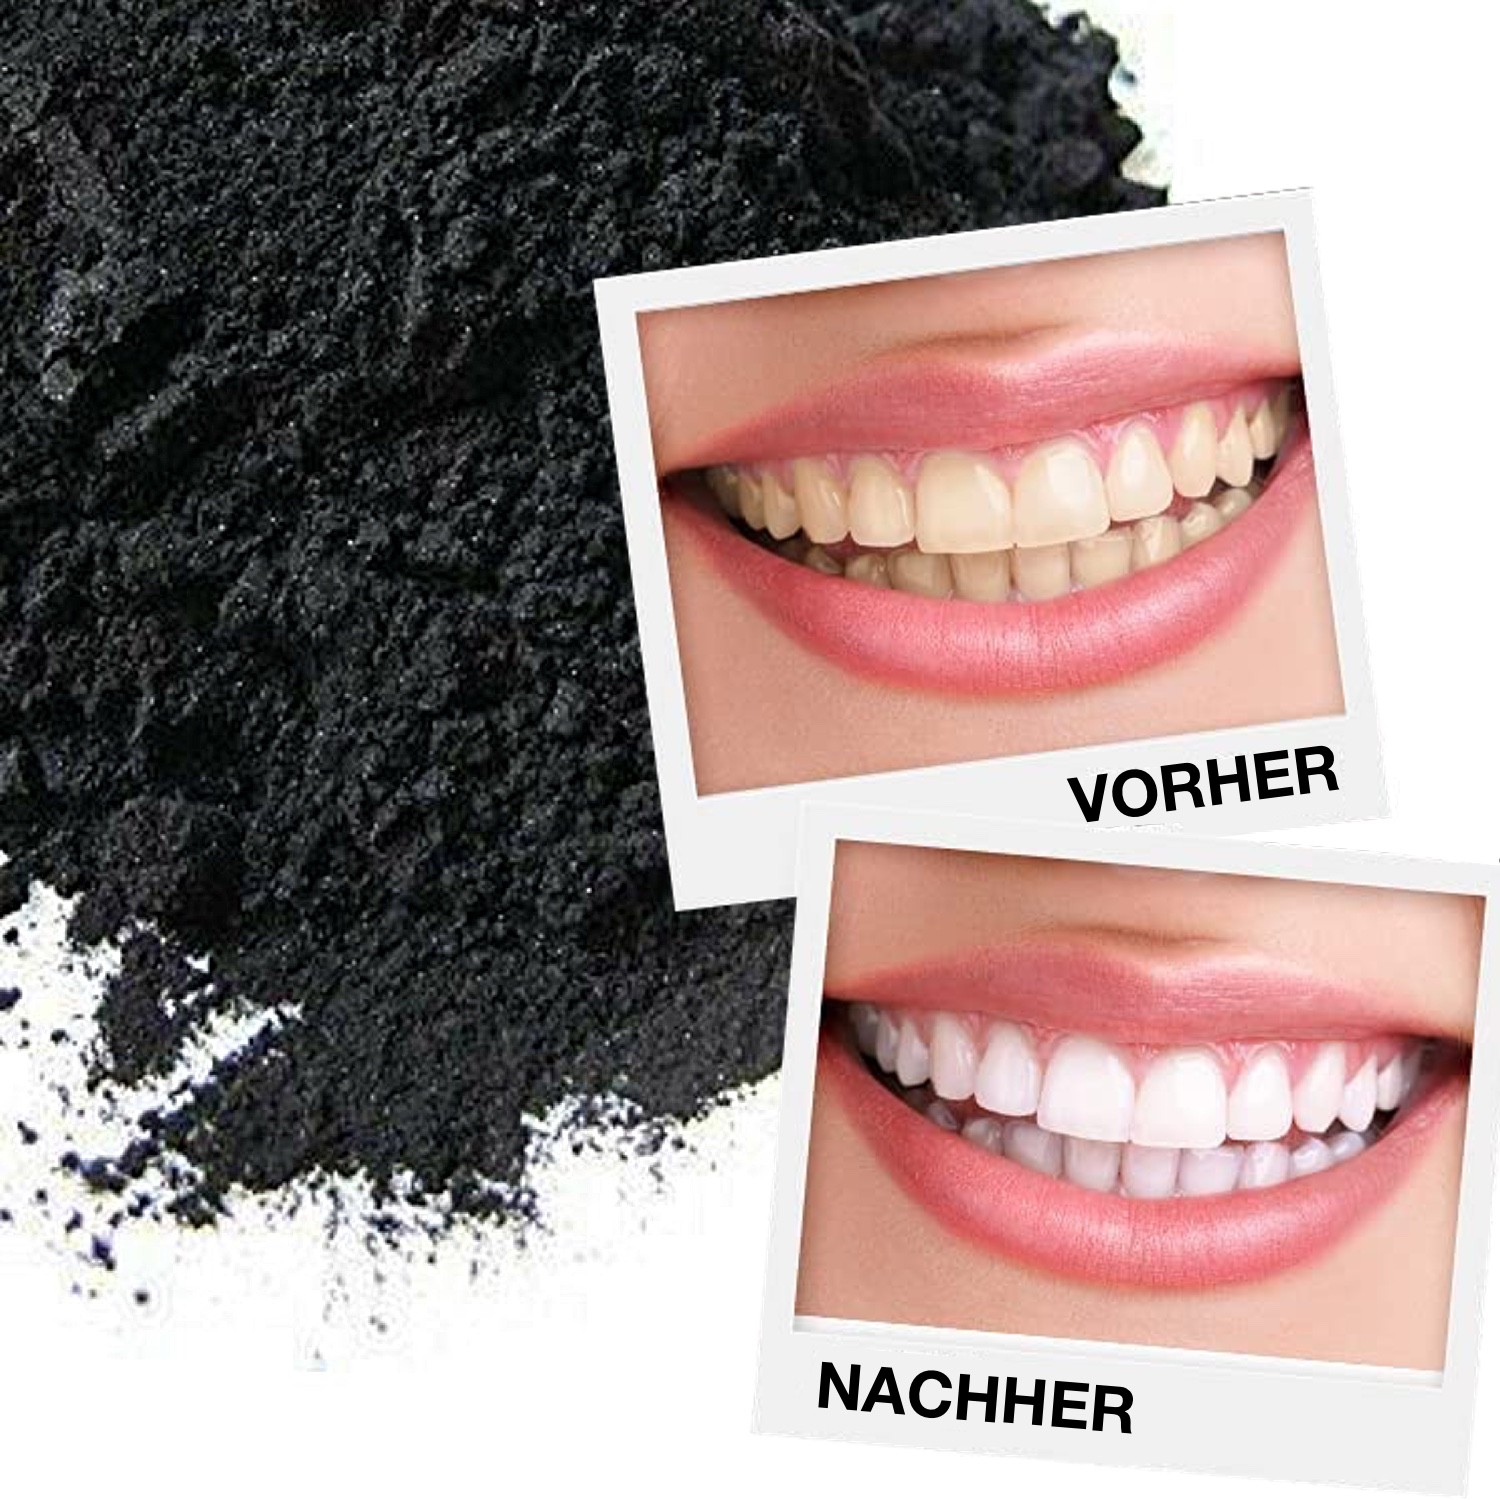 Hochwertiges Zahnaufhellung Set weißere Zähne dank Aktivkohle Technologie - für Zuhause und unterwegs | Bio | Teeth Whitening Bleichsystem